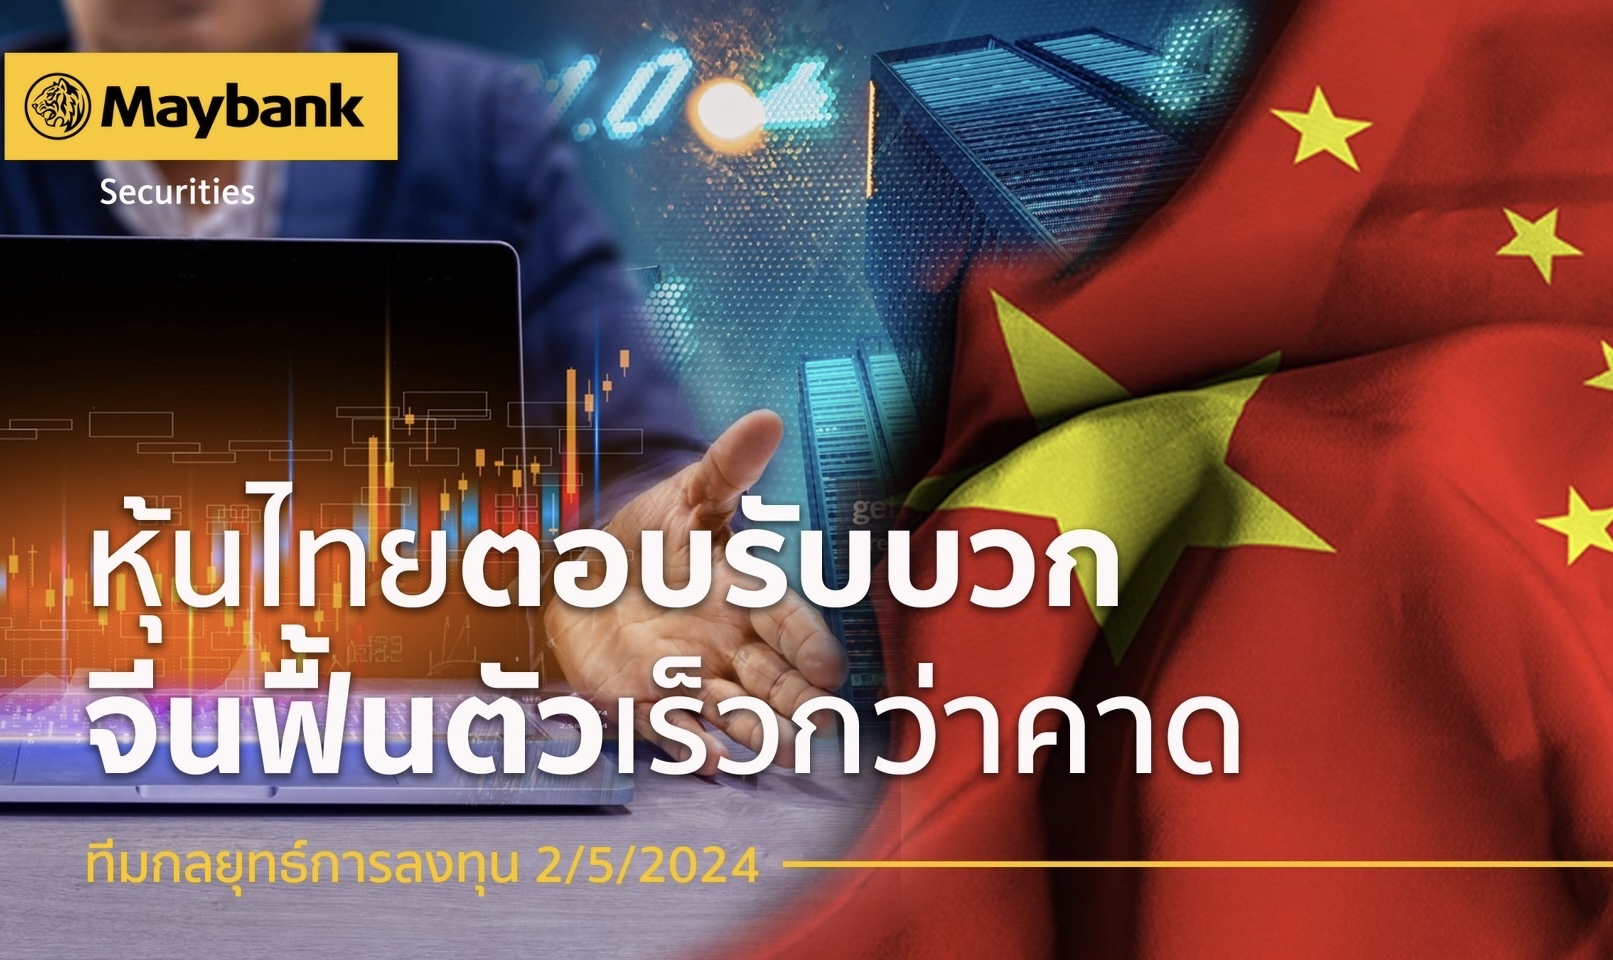 หลักทรัพย์เมย์แบงก์ ชี้หุ้นไทย ตอบรับเชิงบวก จีนฟื้นตัวเร็วกว่าคาดแนะนำหุ้น ‘WHA’ ‘MINT’ ‘ICHI’